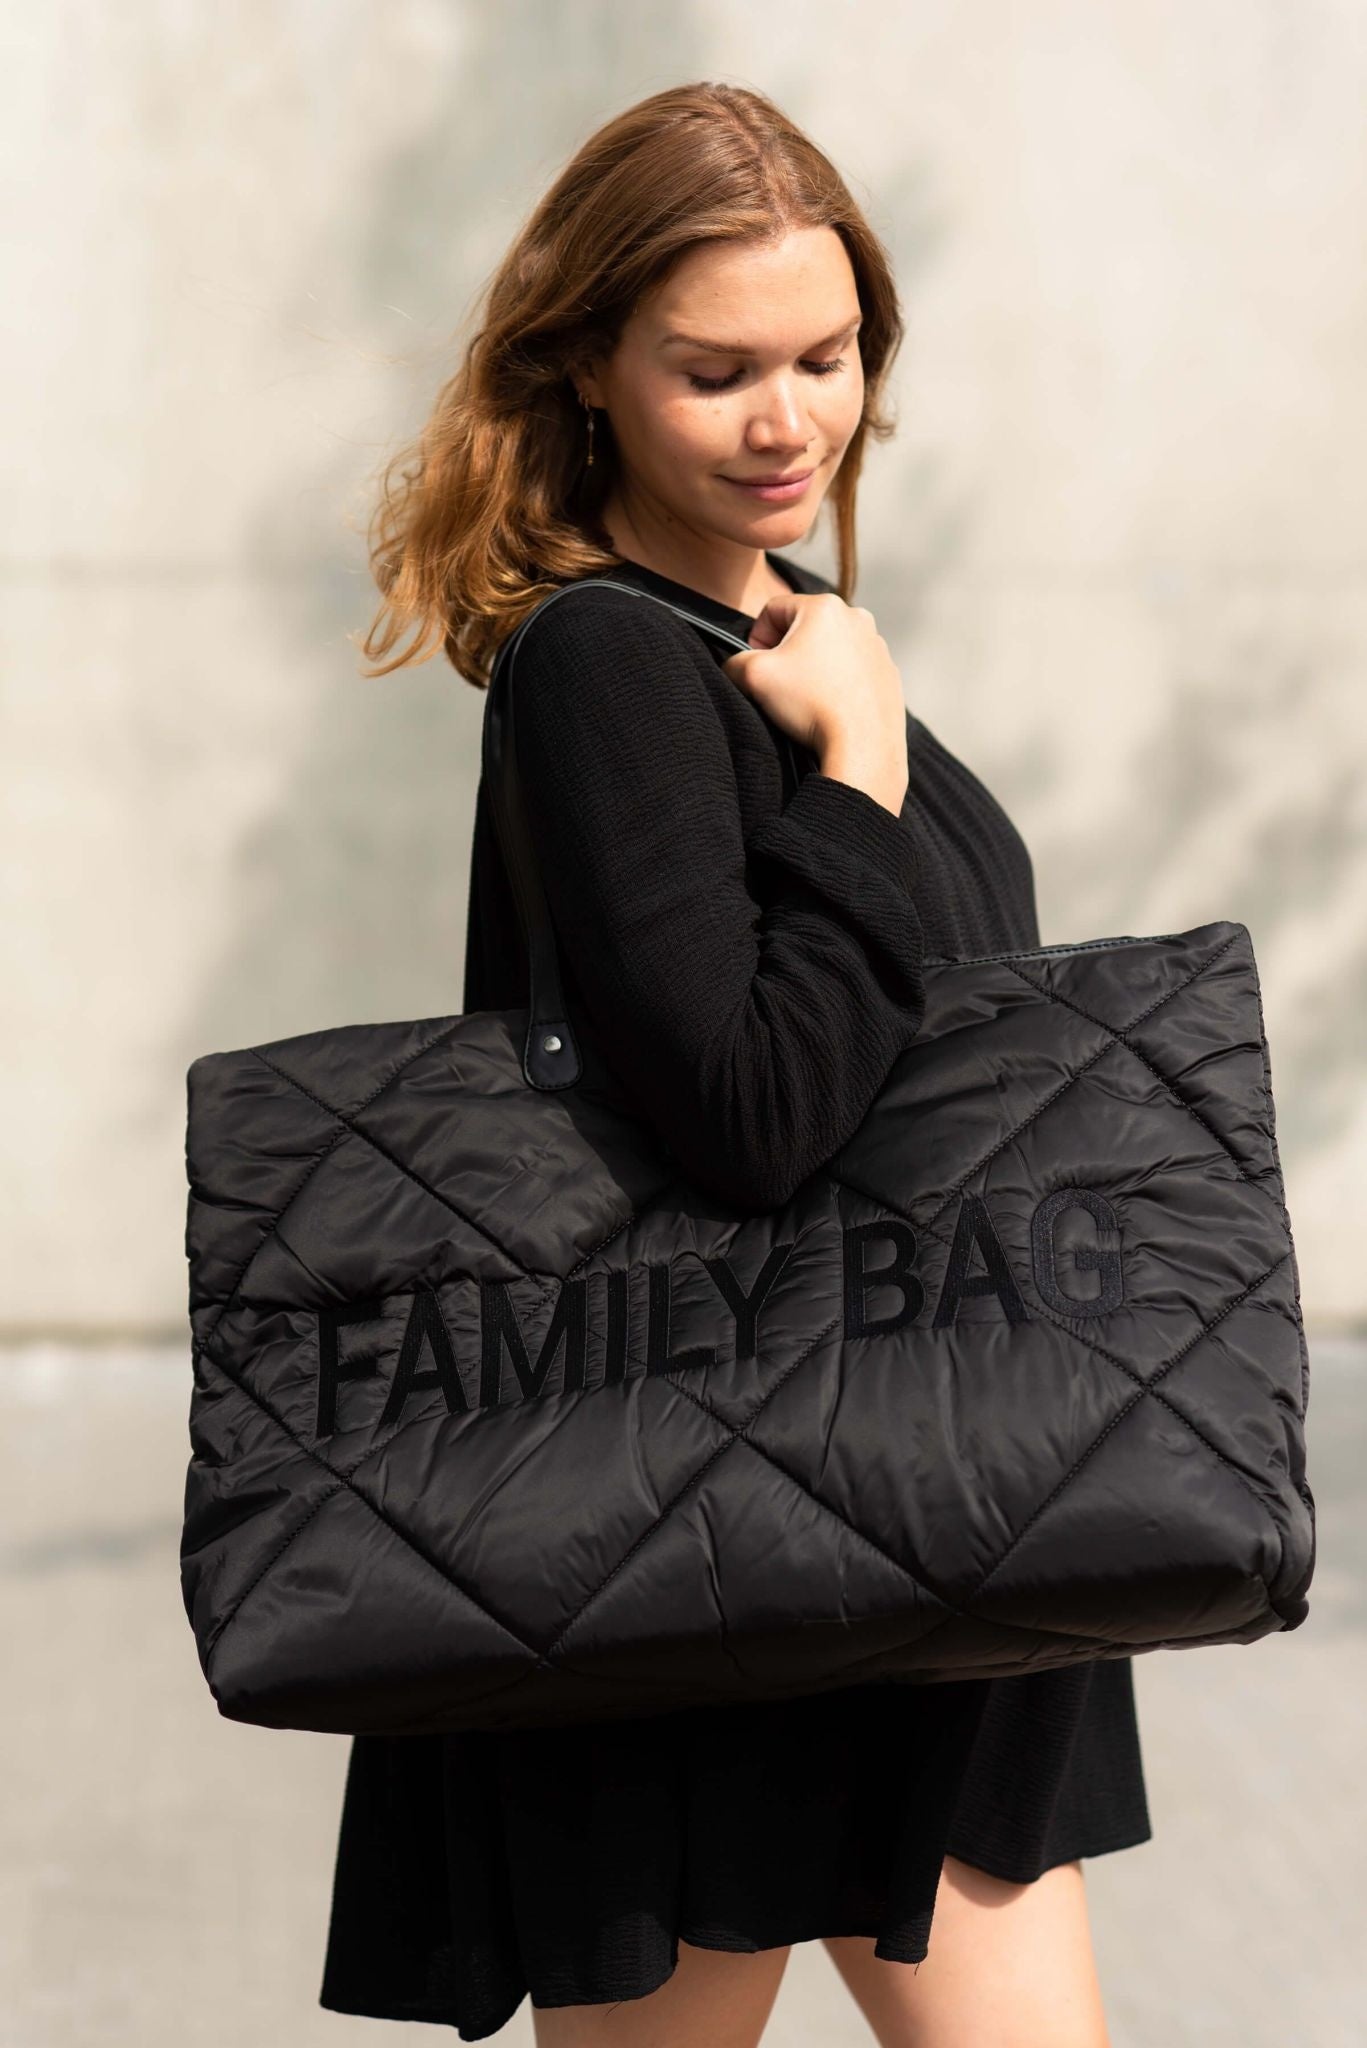 Family Bag Verzorgingstas - Gewatteerd - Zwart